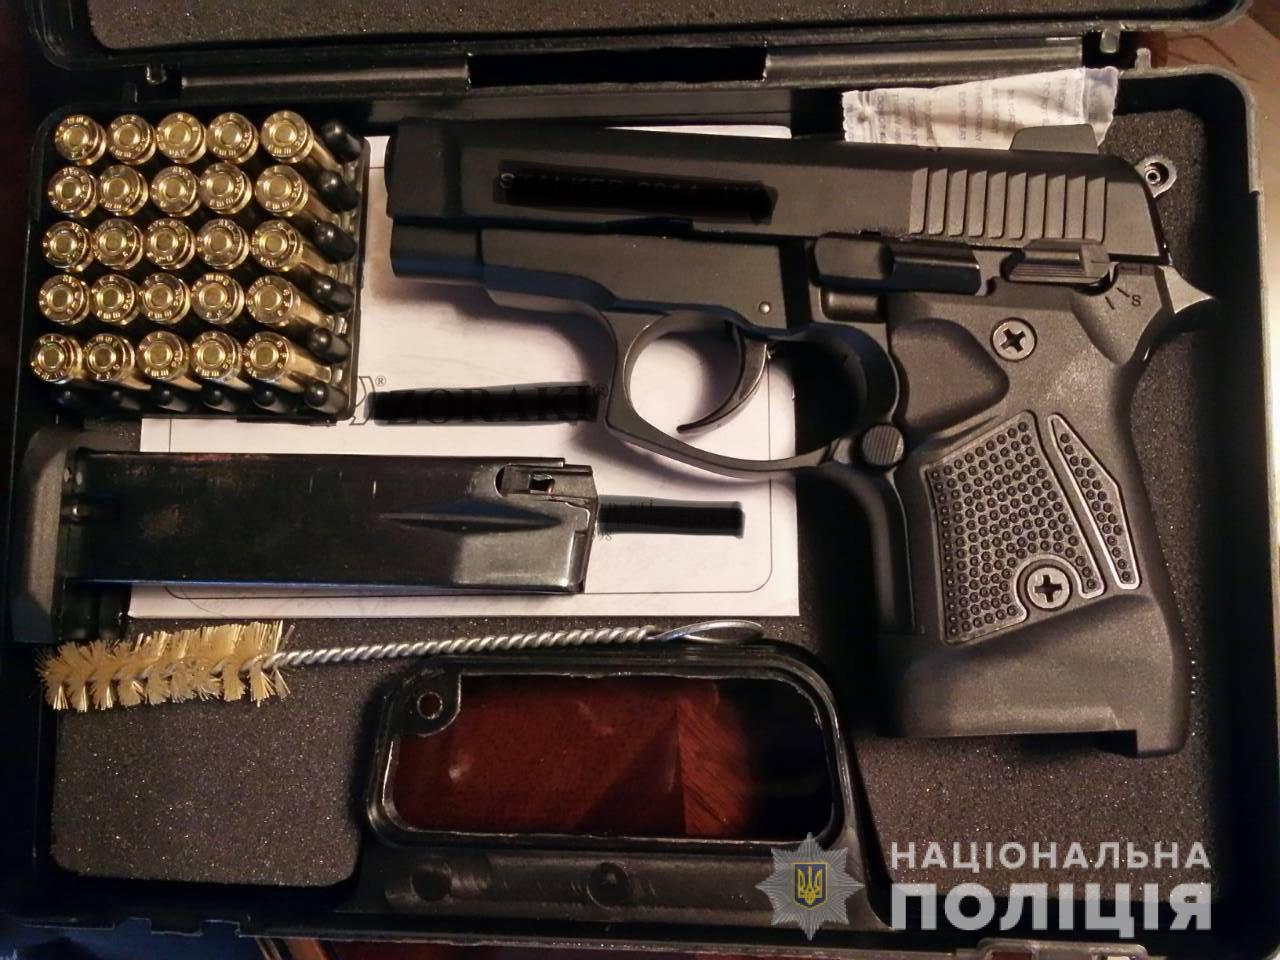 Мешканця Рахова обвинувачують у незаконному зберіганні зброї (ФОТО)